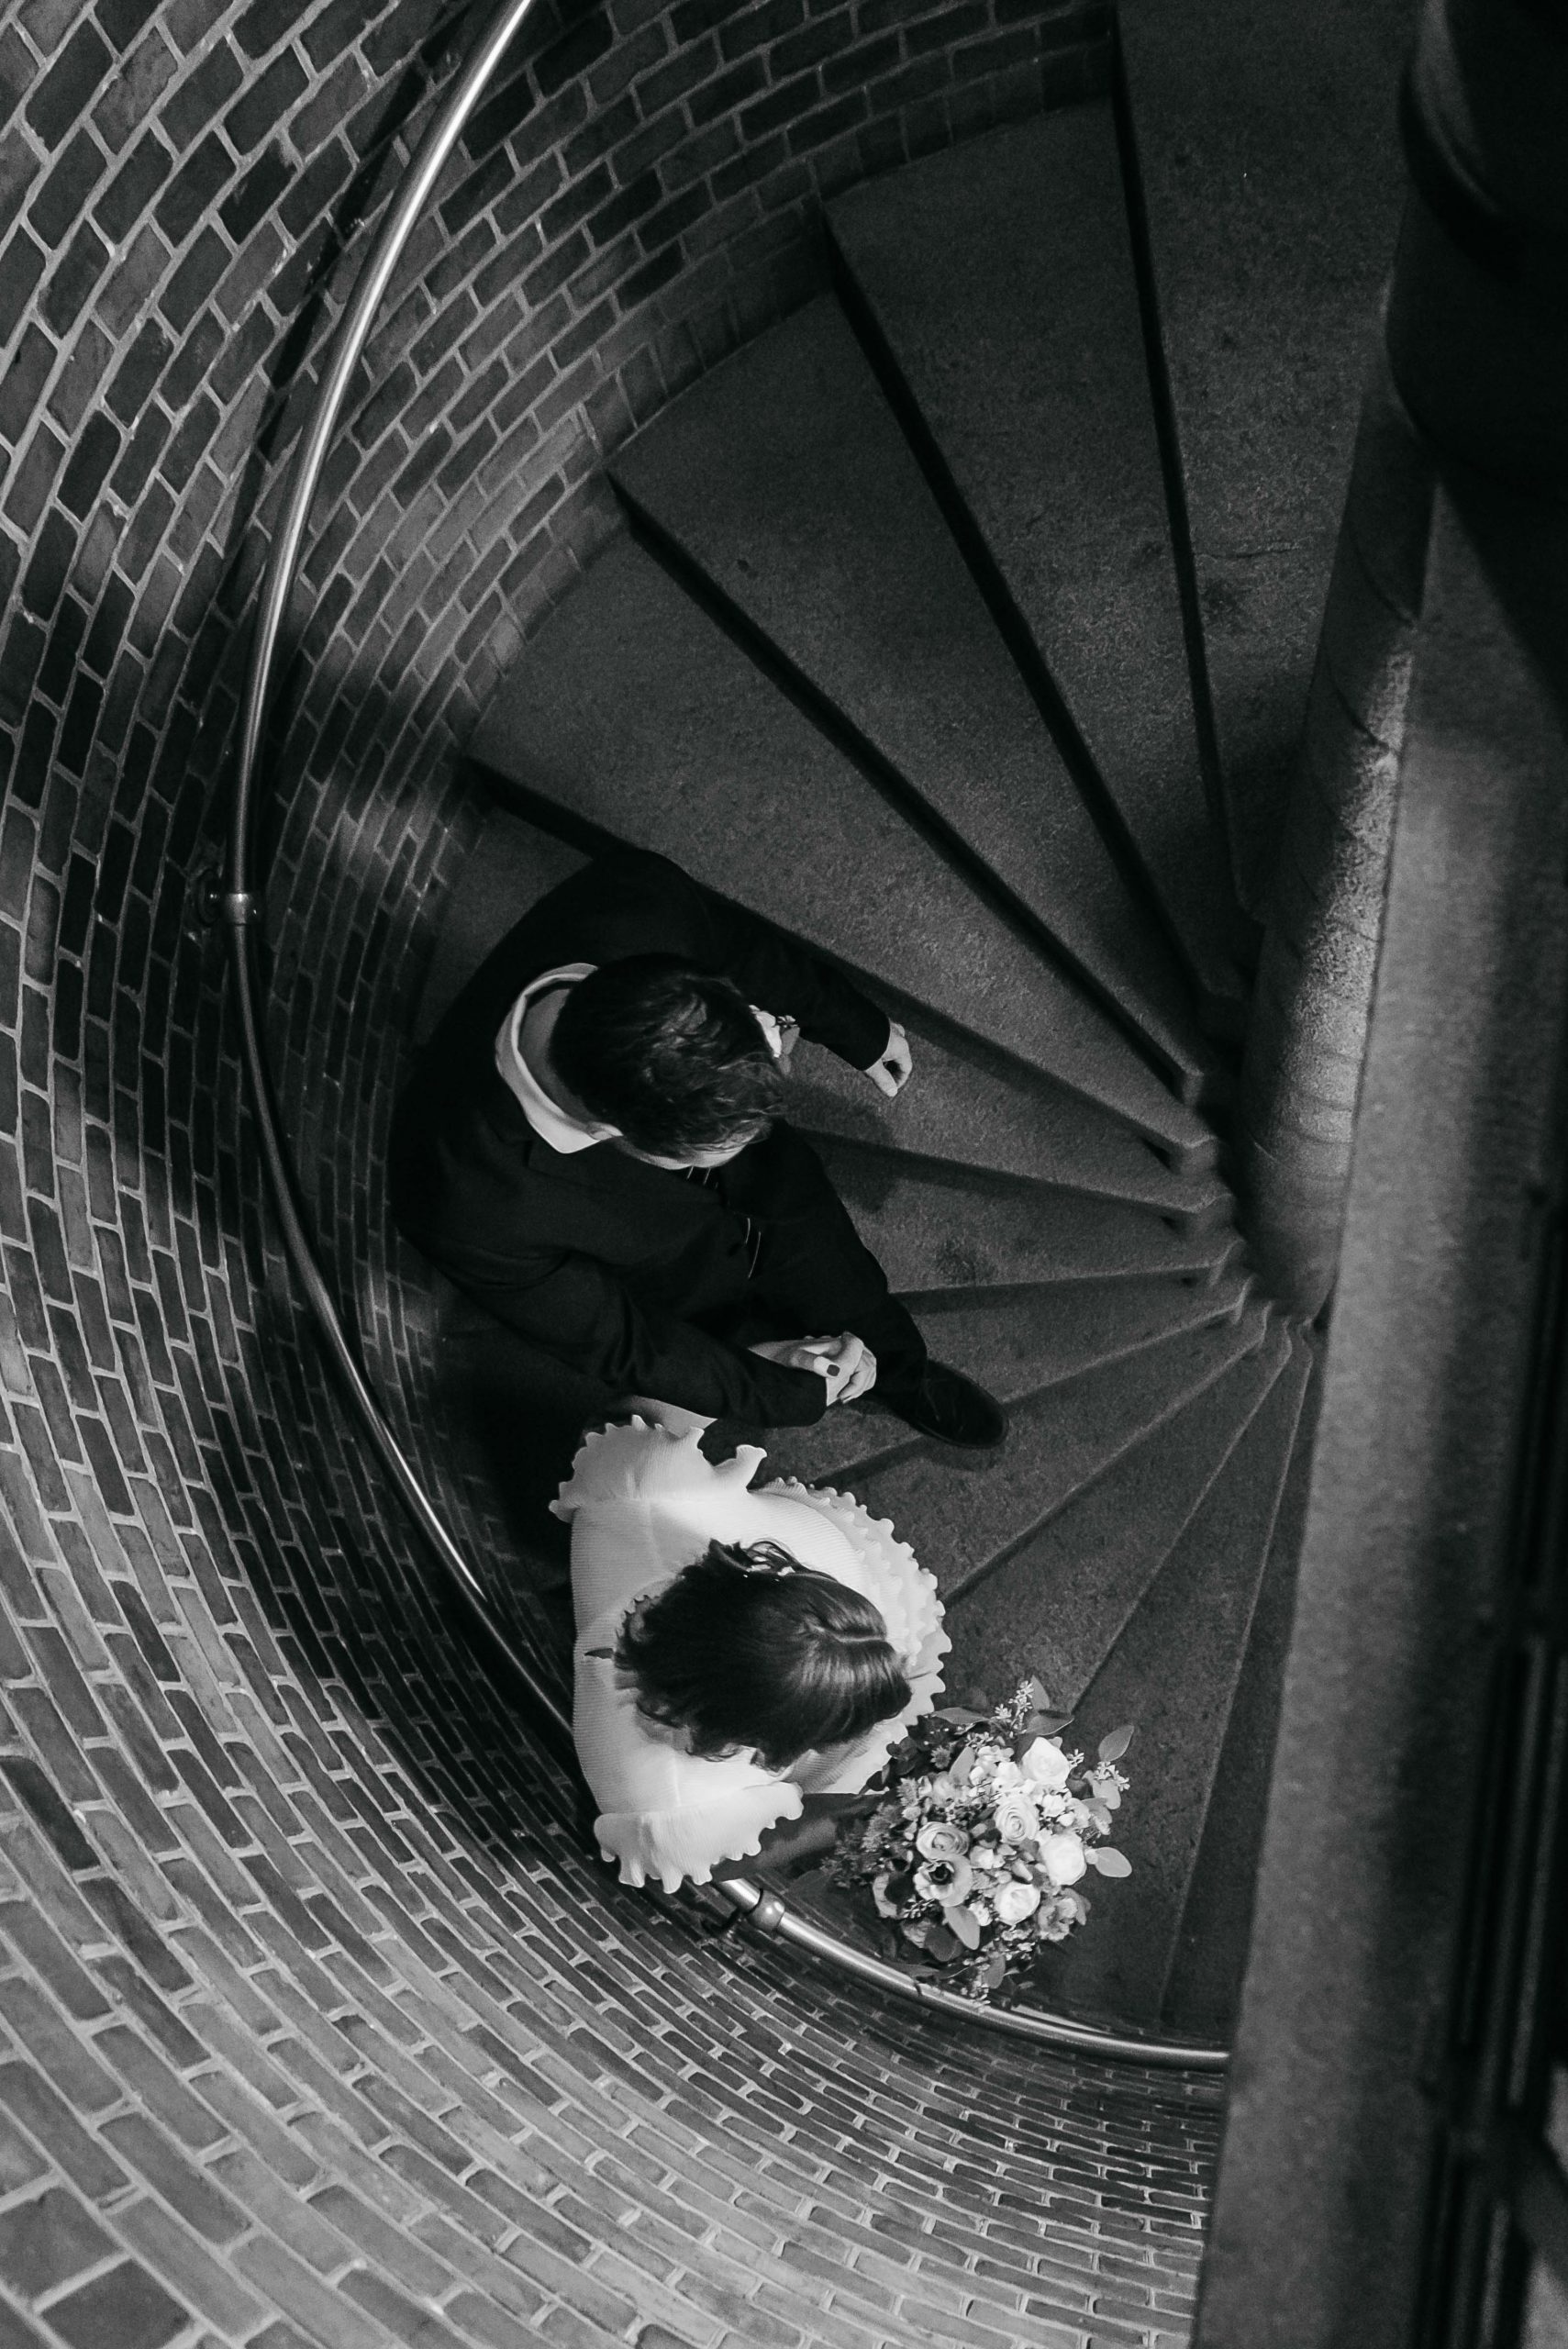 brudepar går hånd i hånd på trappe på københacvns rådhus